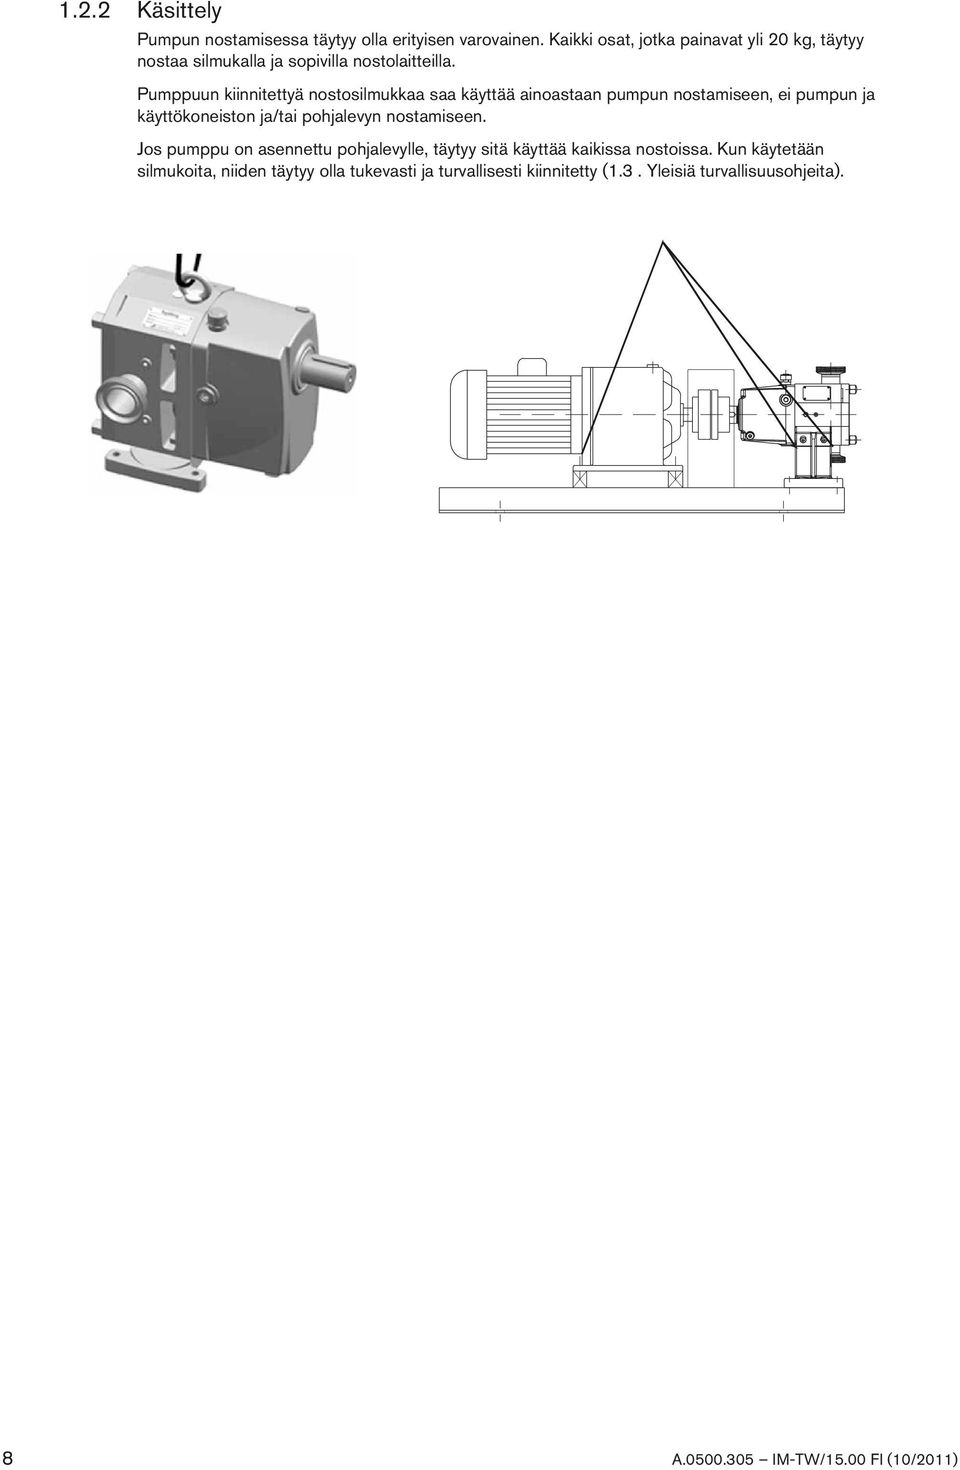 Pumppuun kiinnitettyä nostosilmukkaa saa käyttää ainoastaan pumpun nostamiseen, ei pumpun ja käyttökoneiston ja/tai